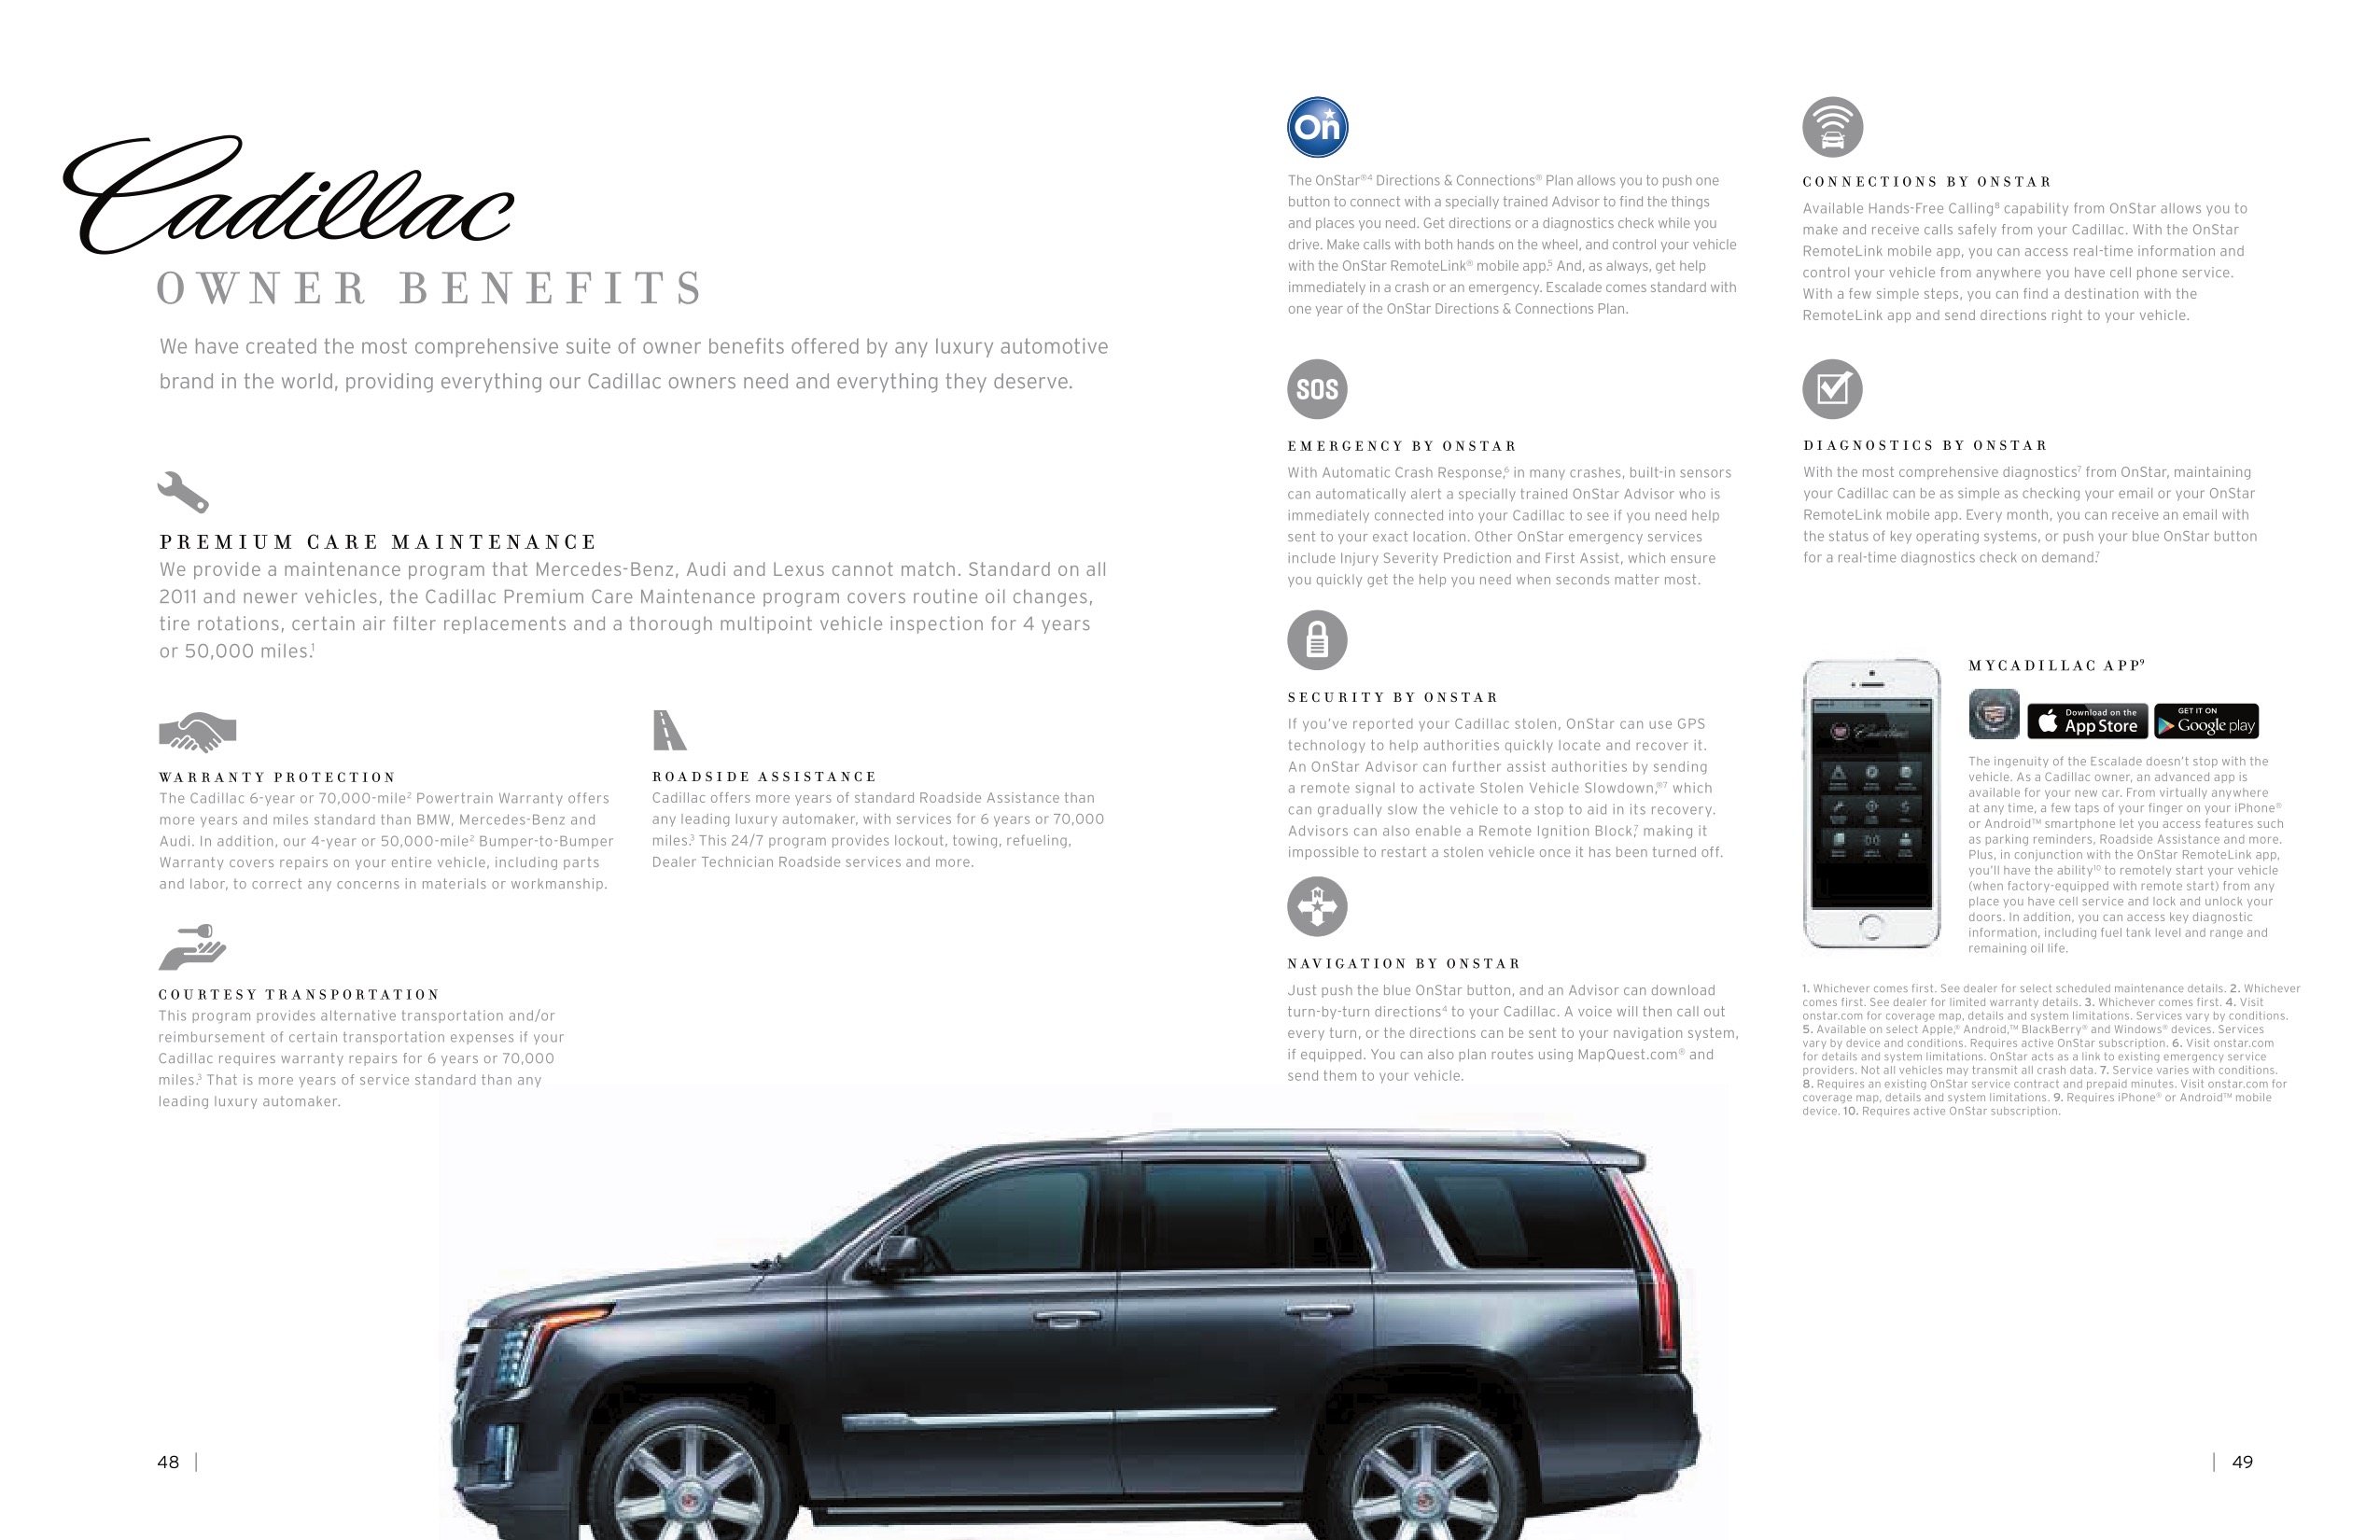 2015 Cadillac Escalade Brochure Page 24